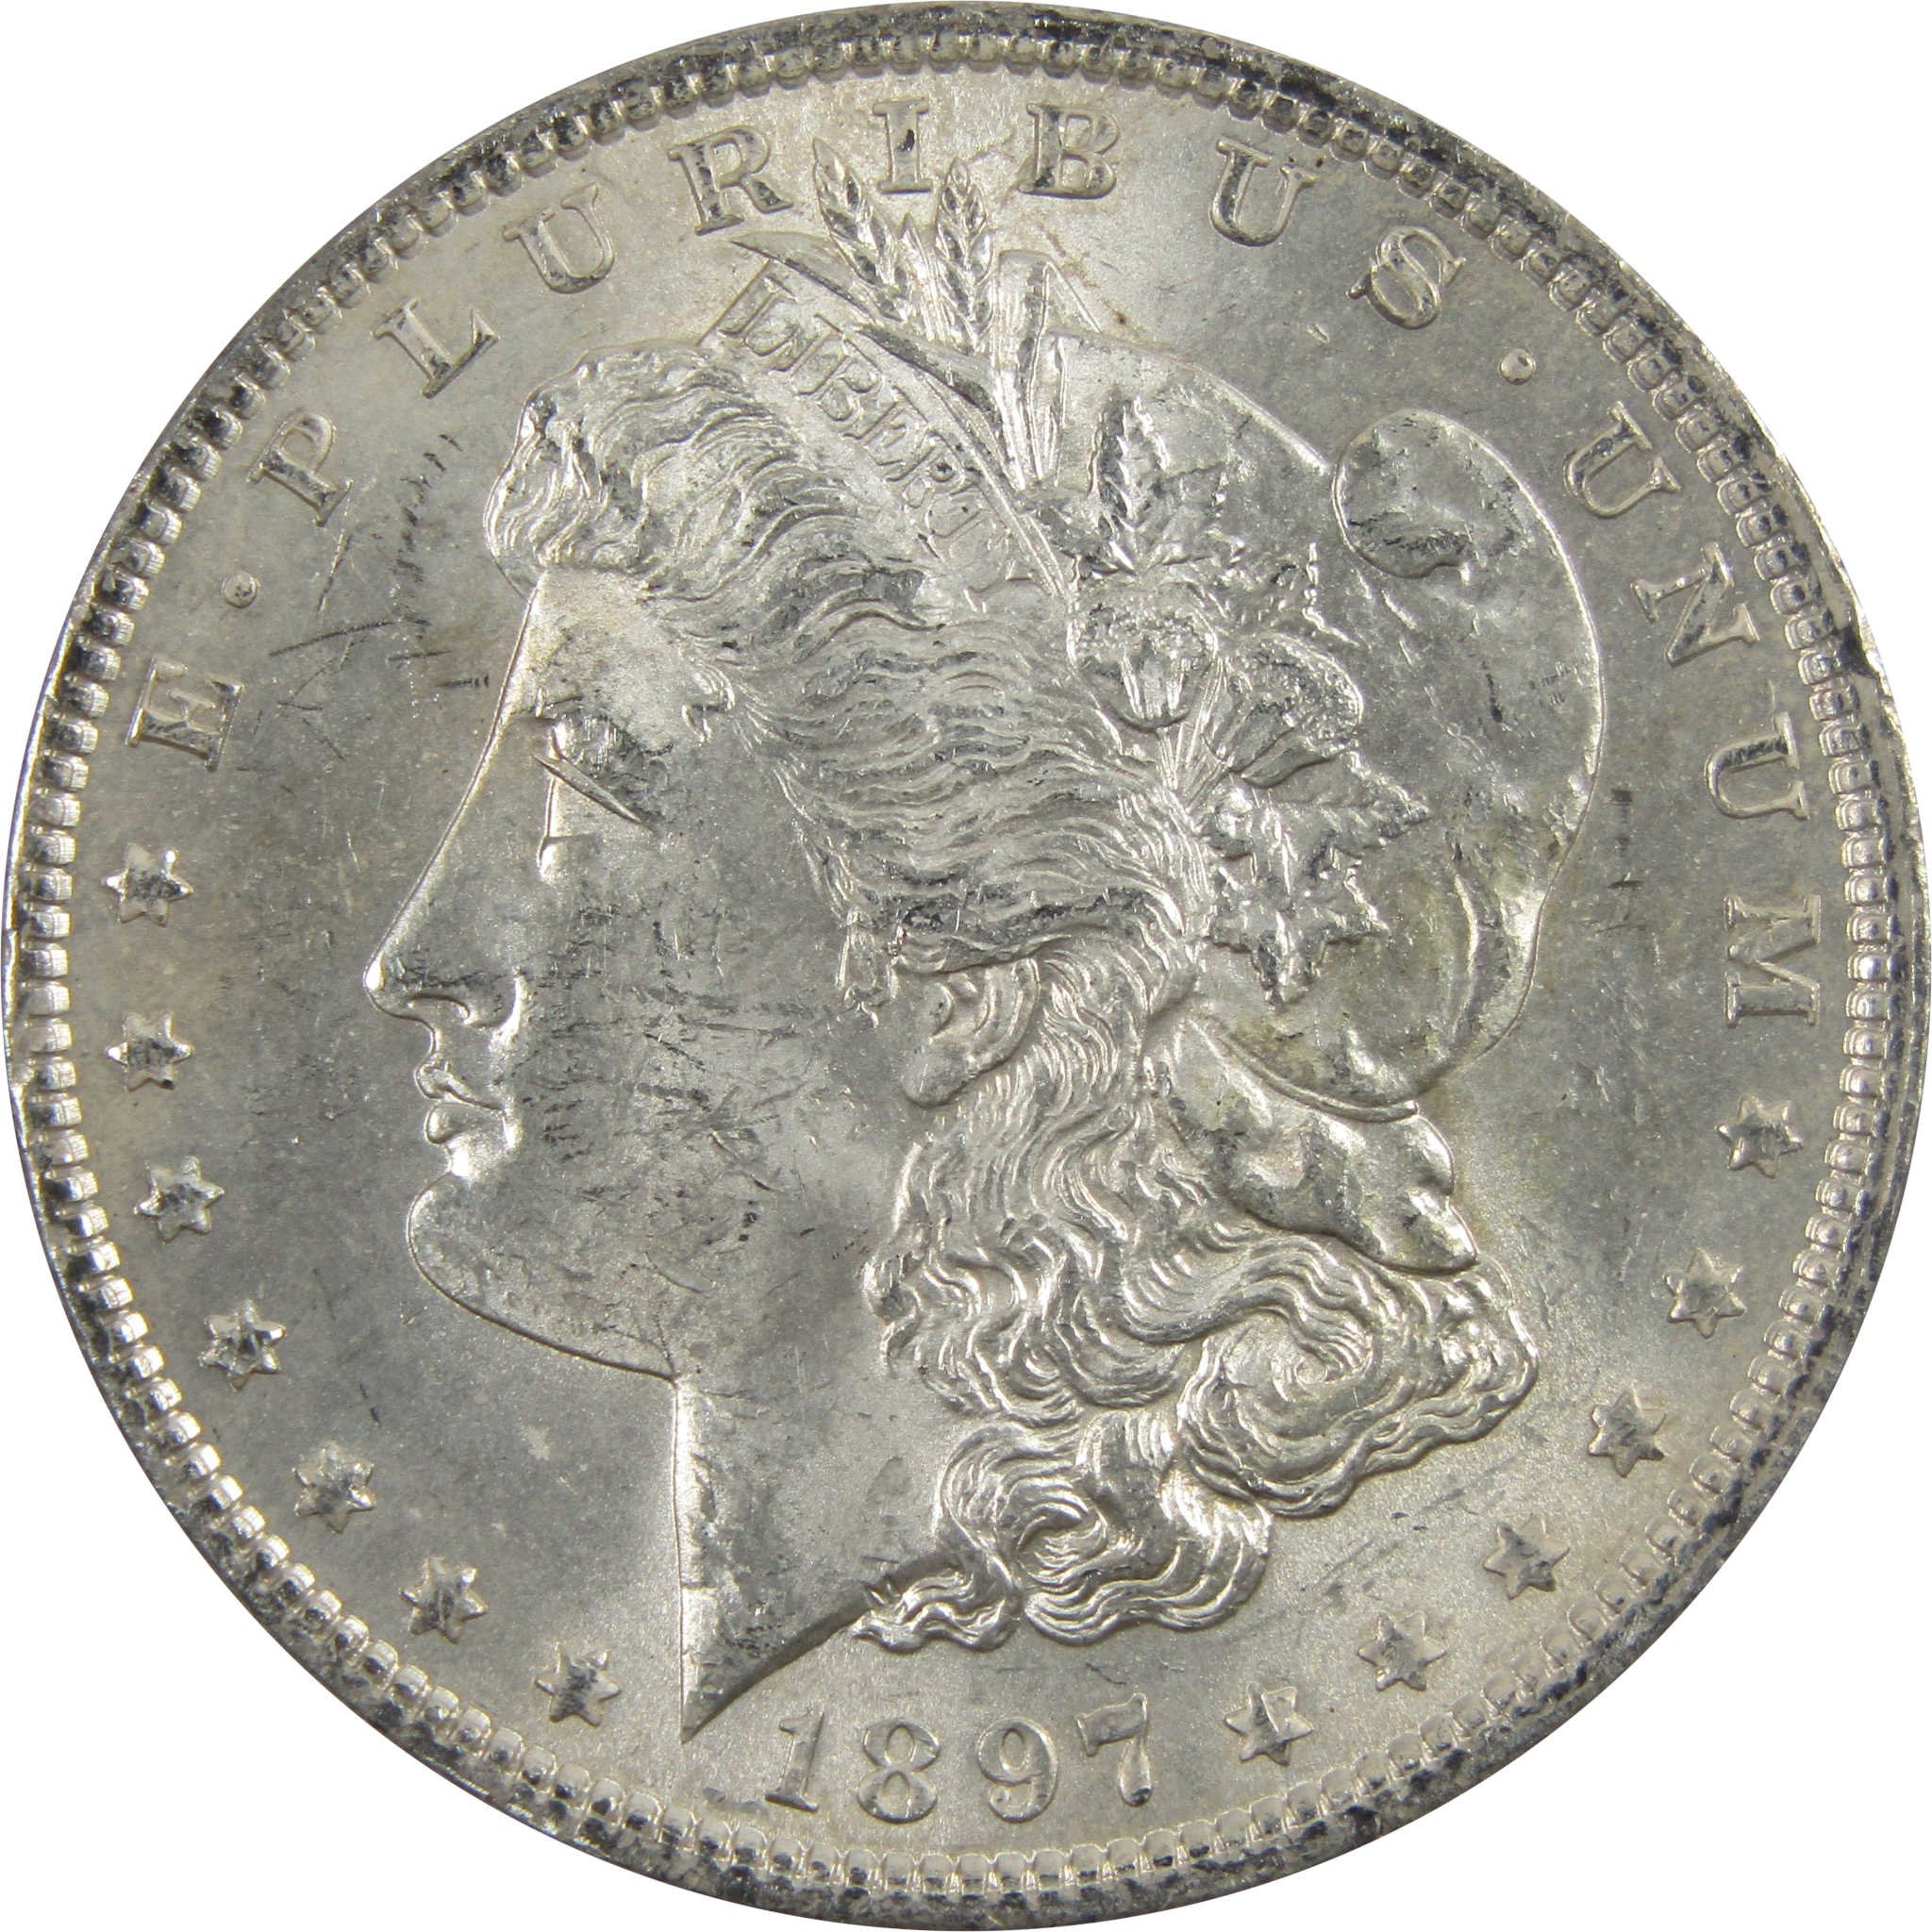 1897 Morgan Dollar BU Uncirculated 90% Silver $1 Coin SKU:I5164 - Morgan coin - Morgan silver dollar - Morgan silver dollar for sale - Profile Coins &amp; Collectibles